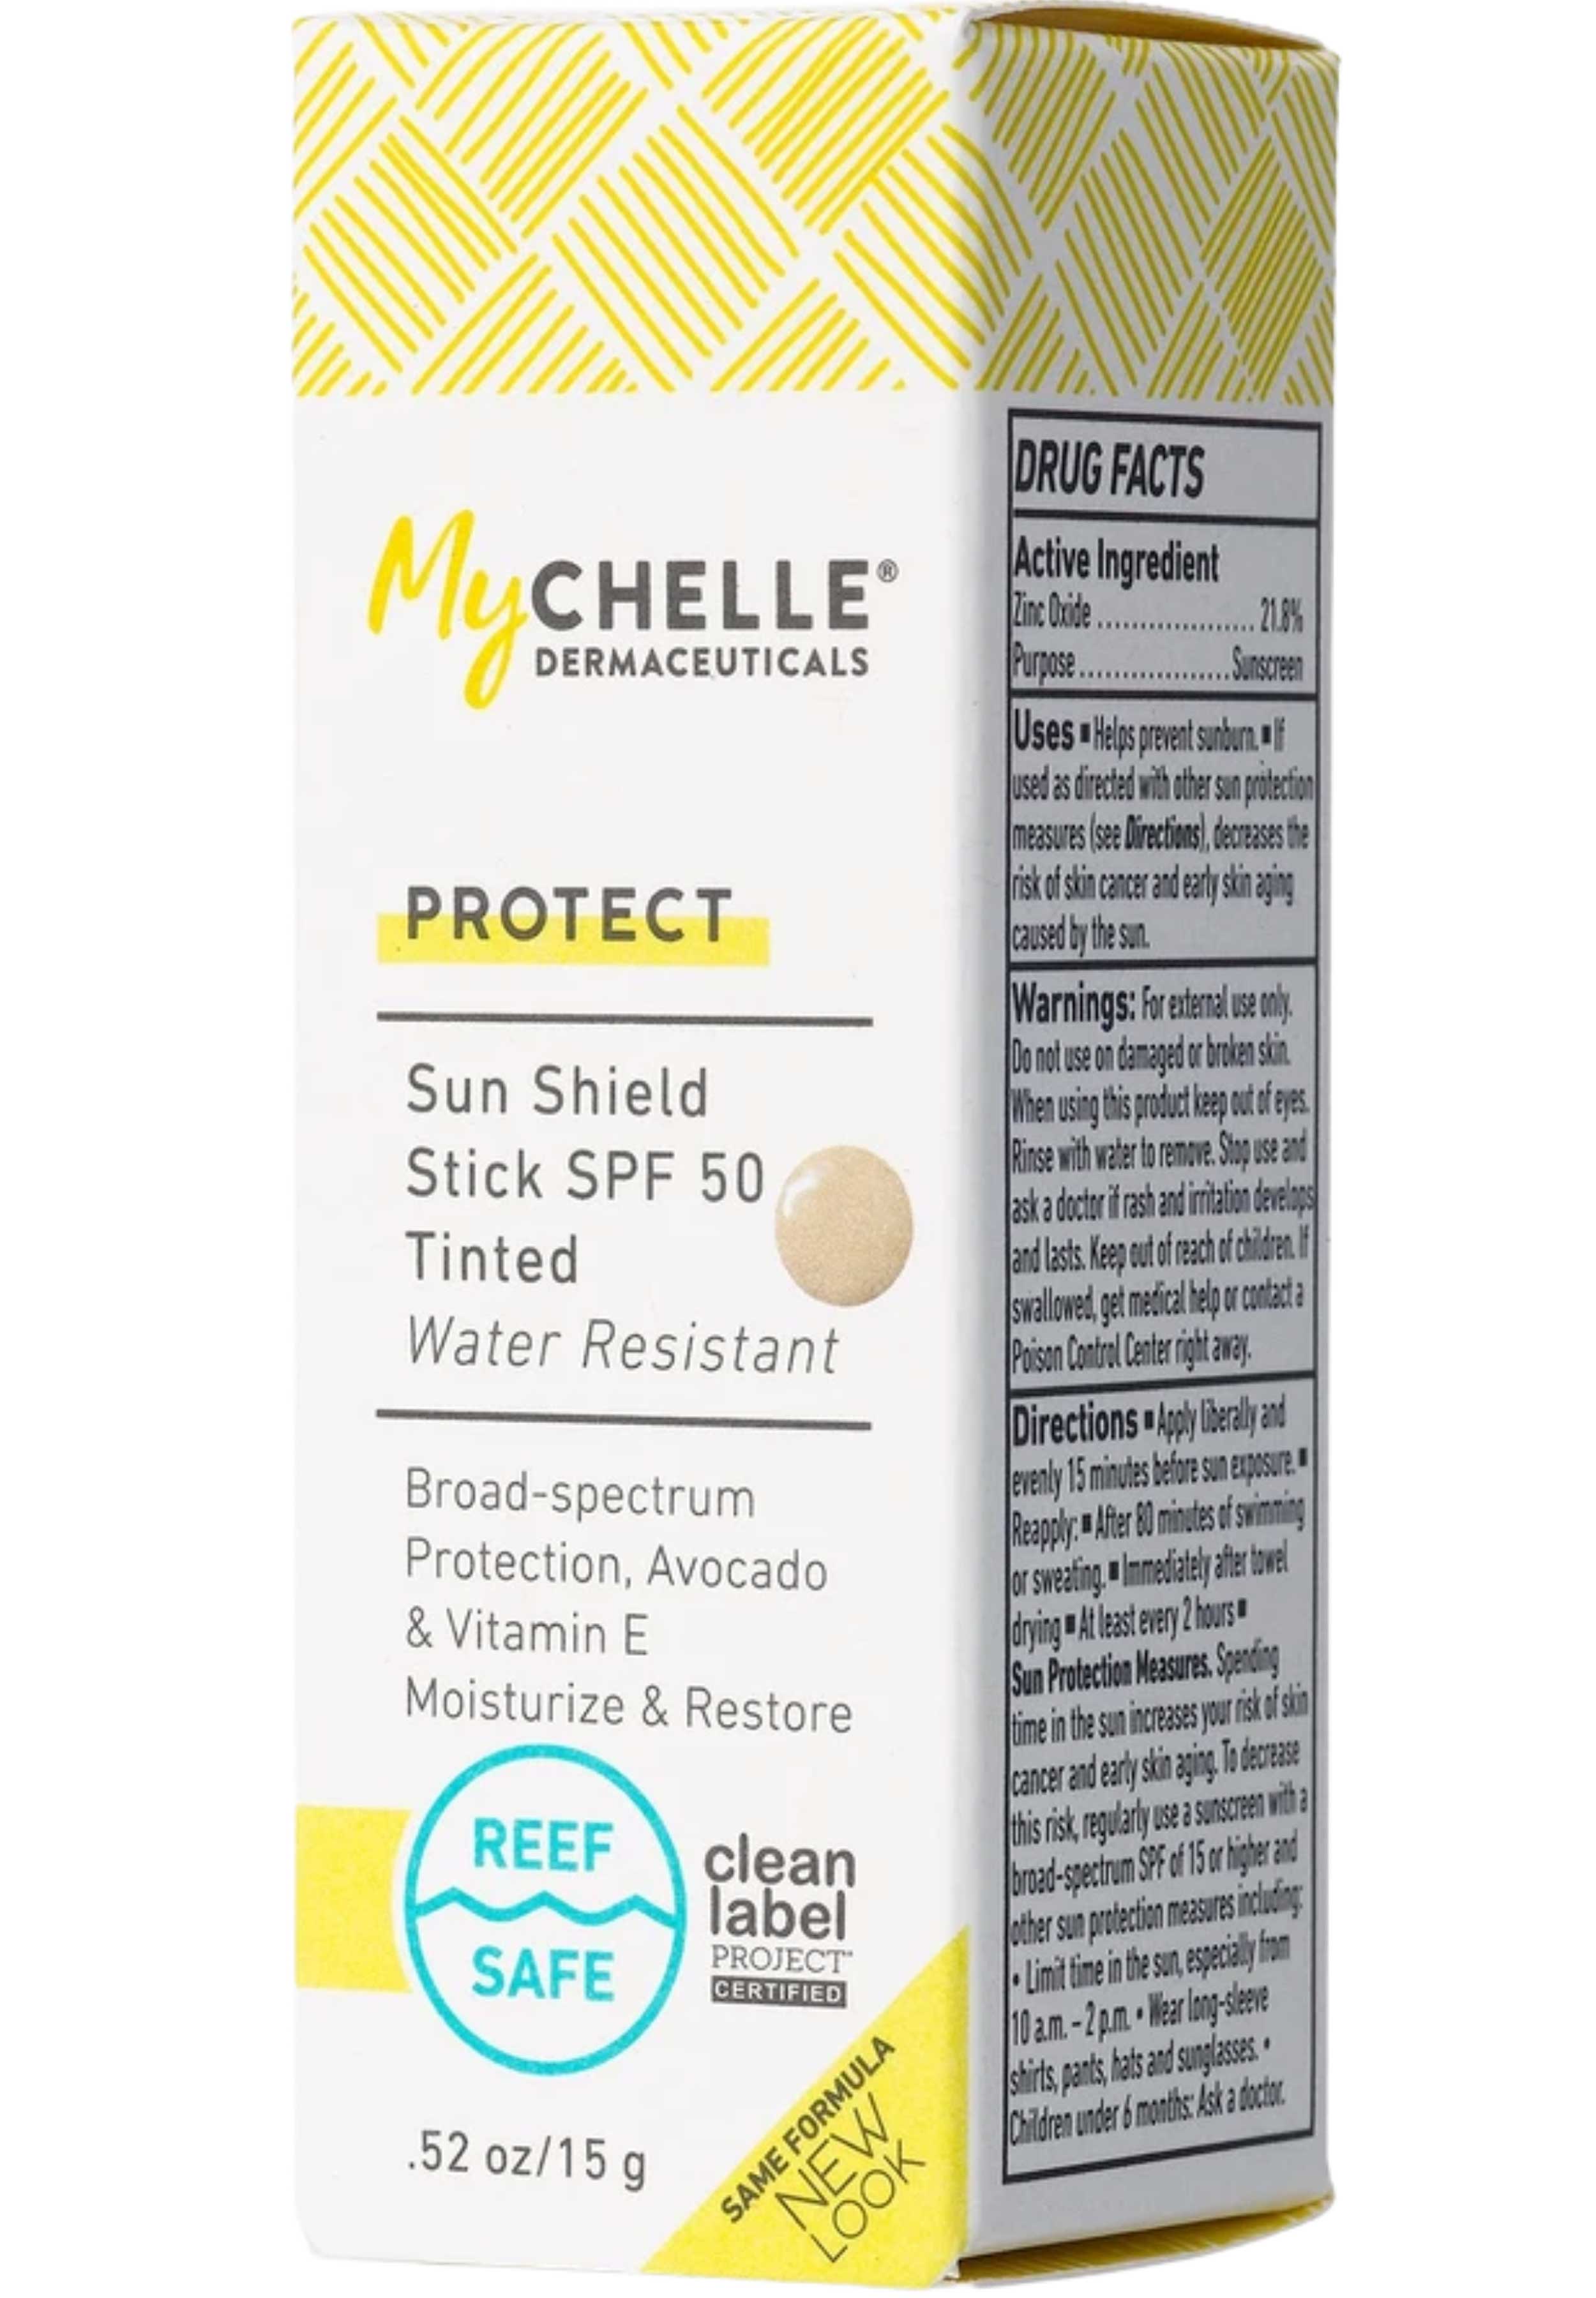 MyChelle Dermaceuticals Sun Shield Stick SPF 50 - Tinted Ingredients